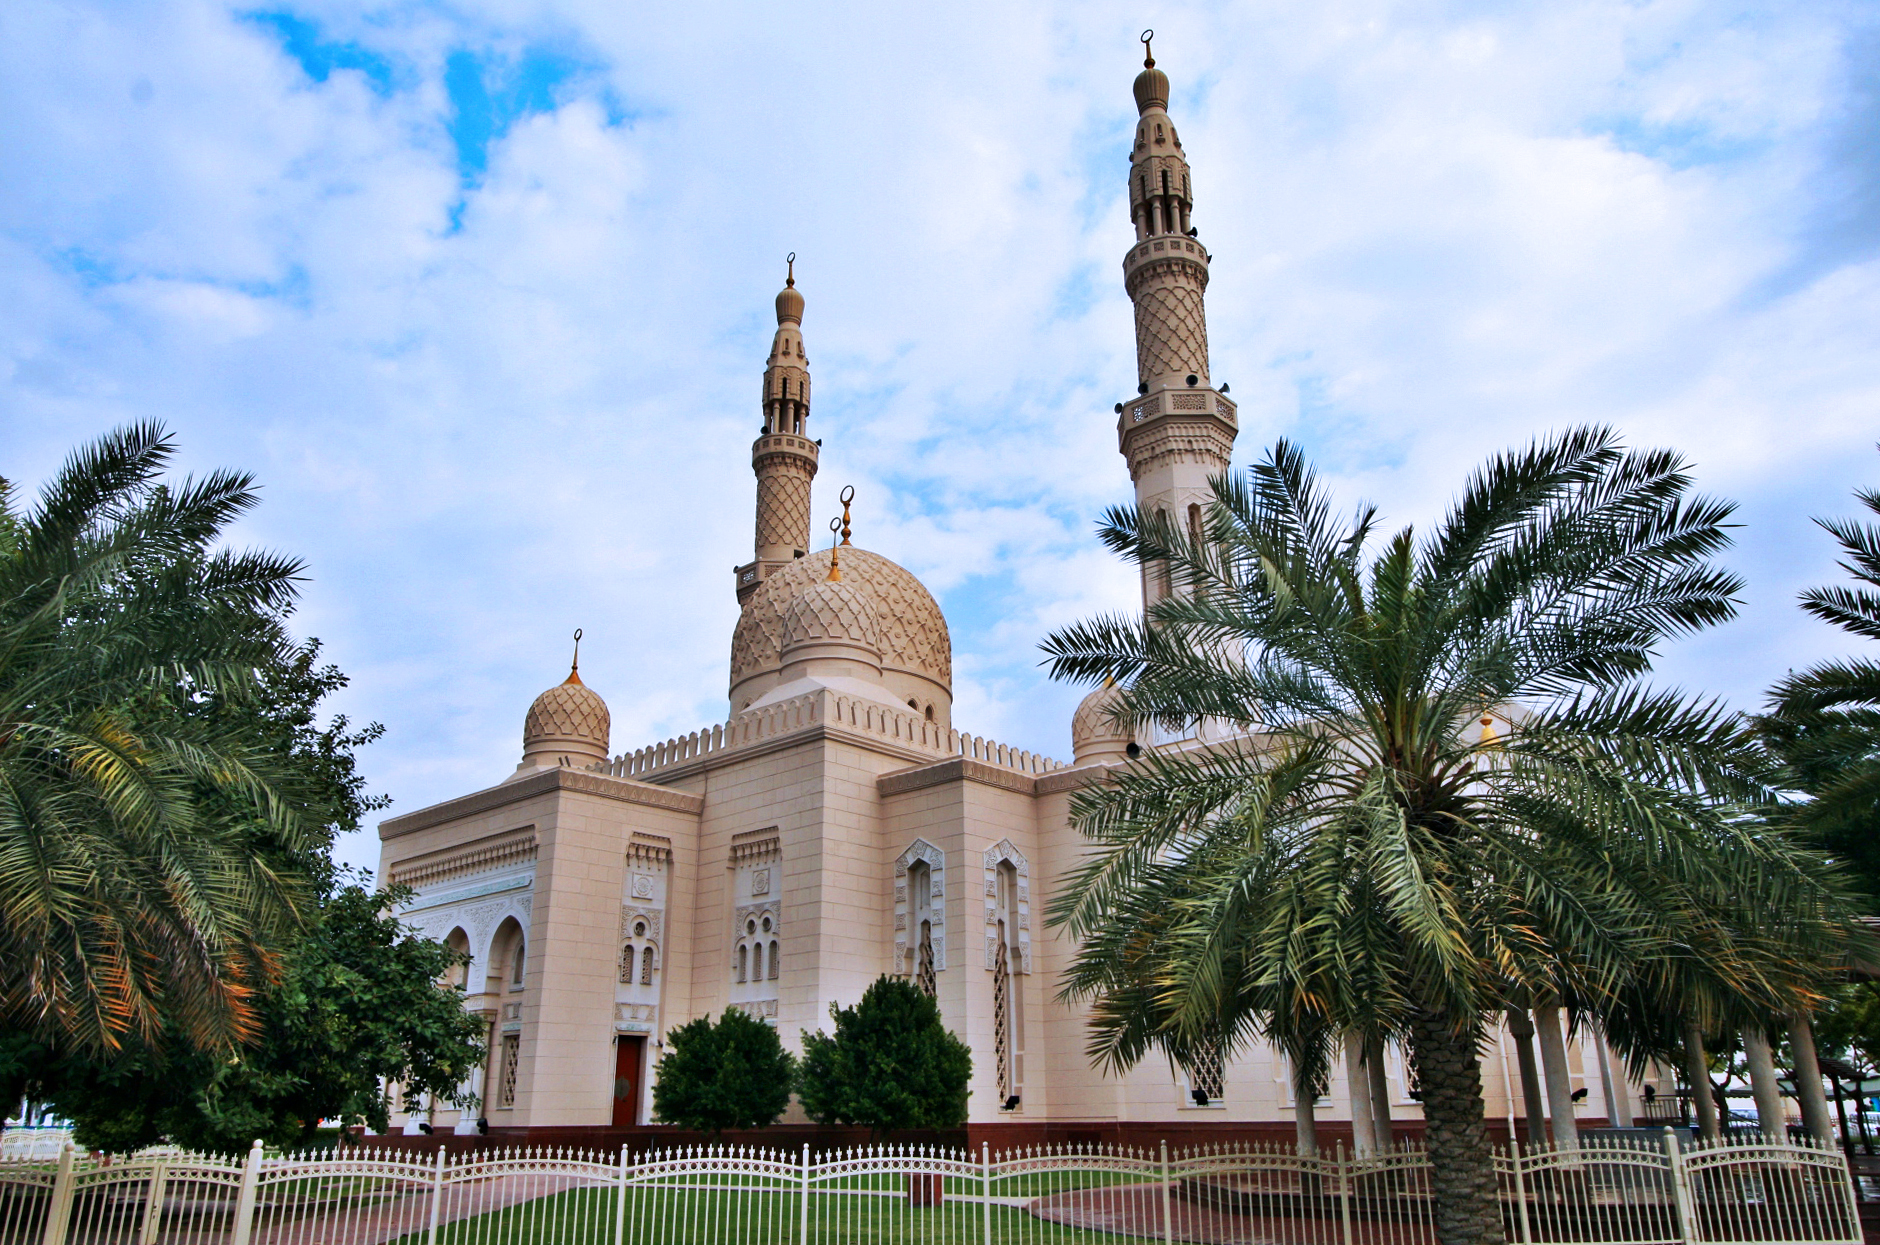 Nhà thờ Hồi giáo Jumeirah - Jumeirah Mosque - Dubai - Các Tiểu Vương Quốc Ả Rập Thống Nhất